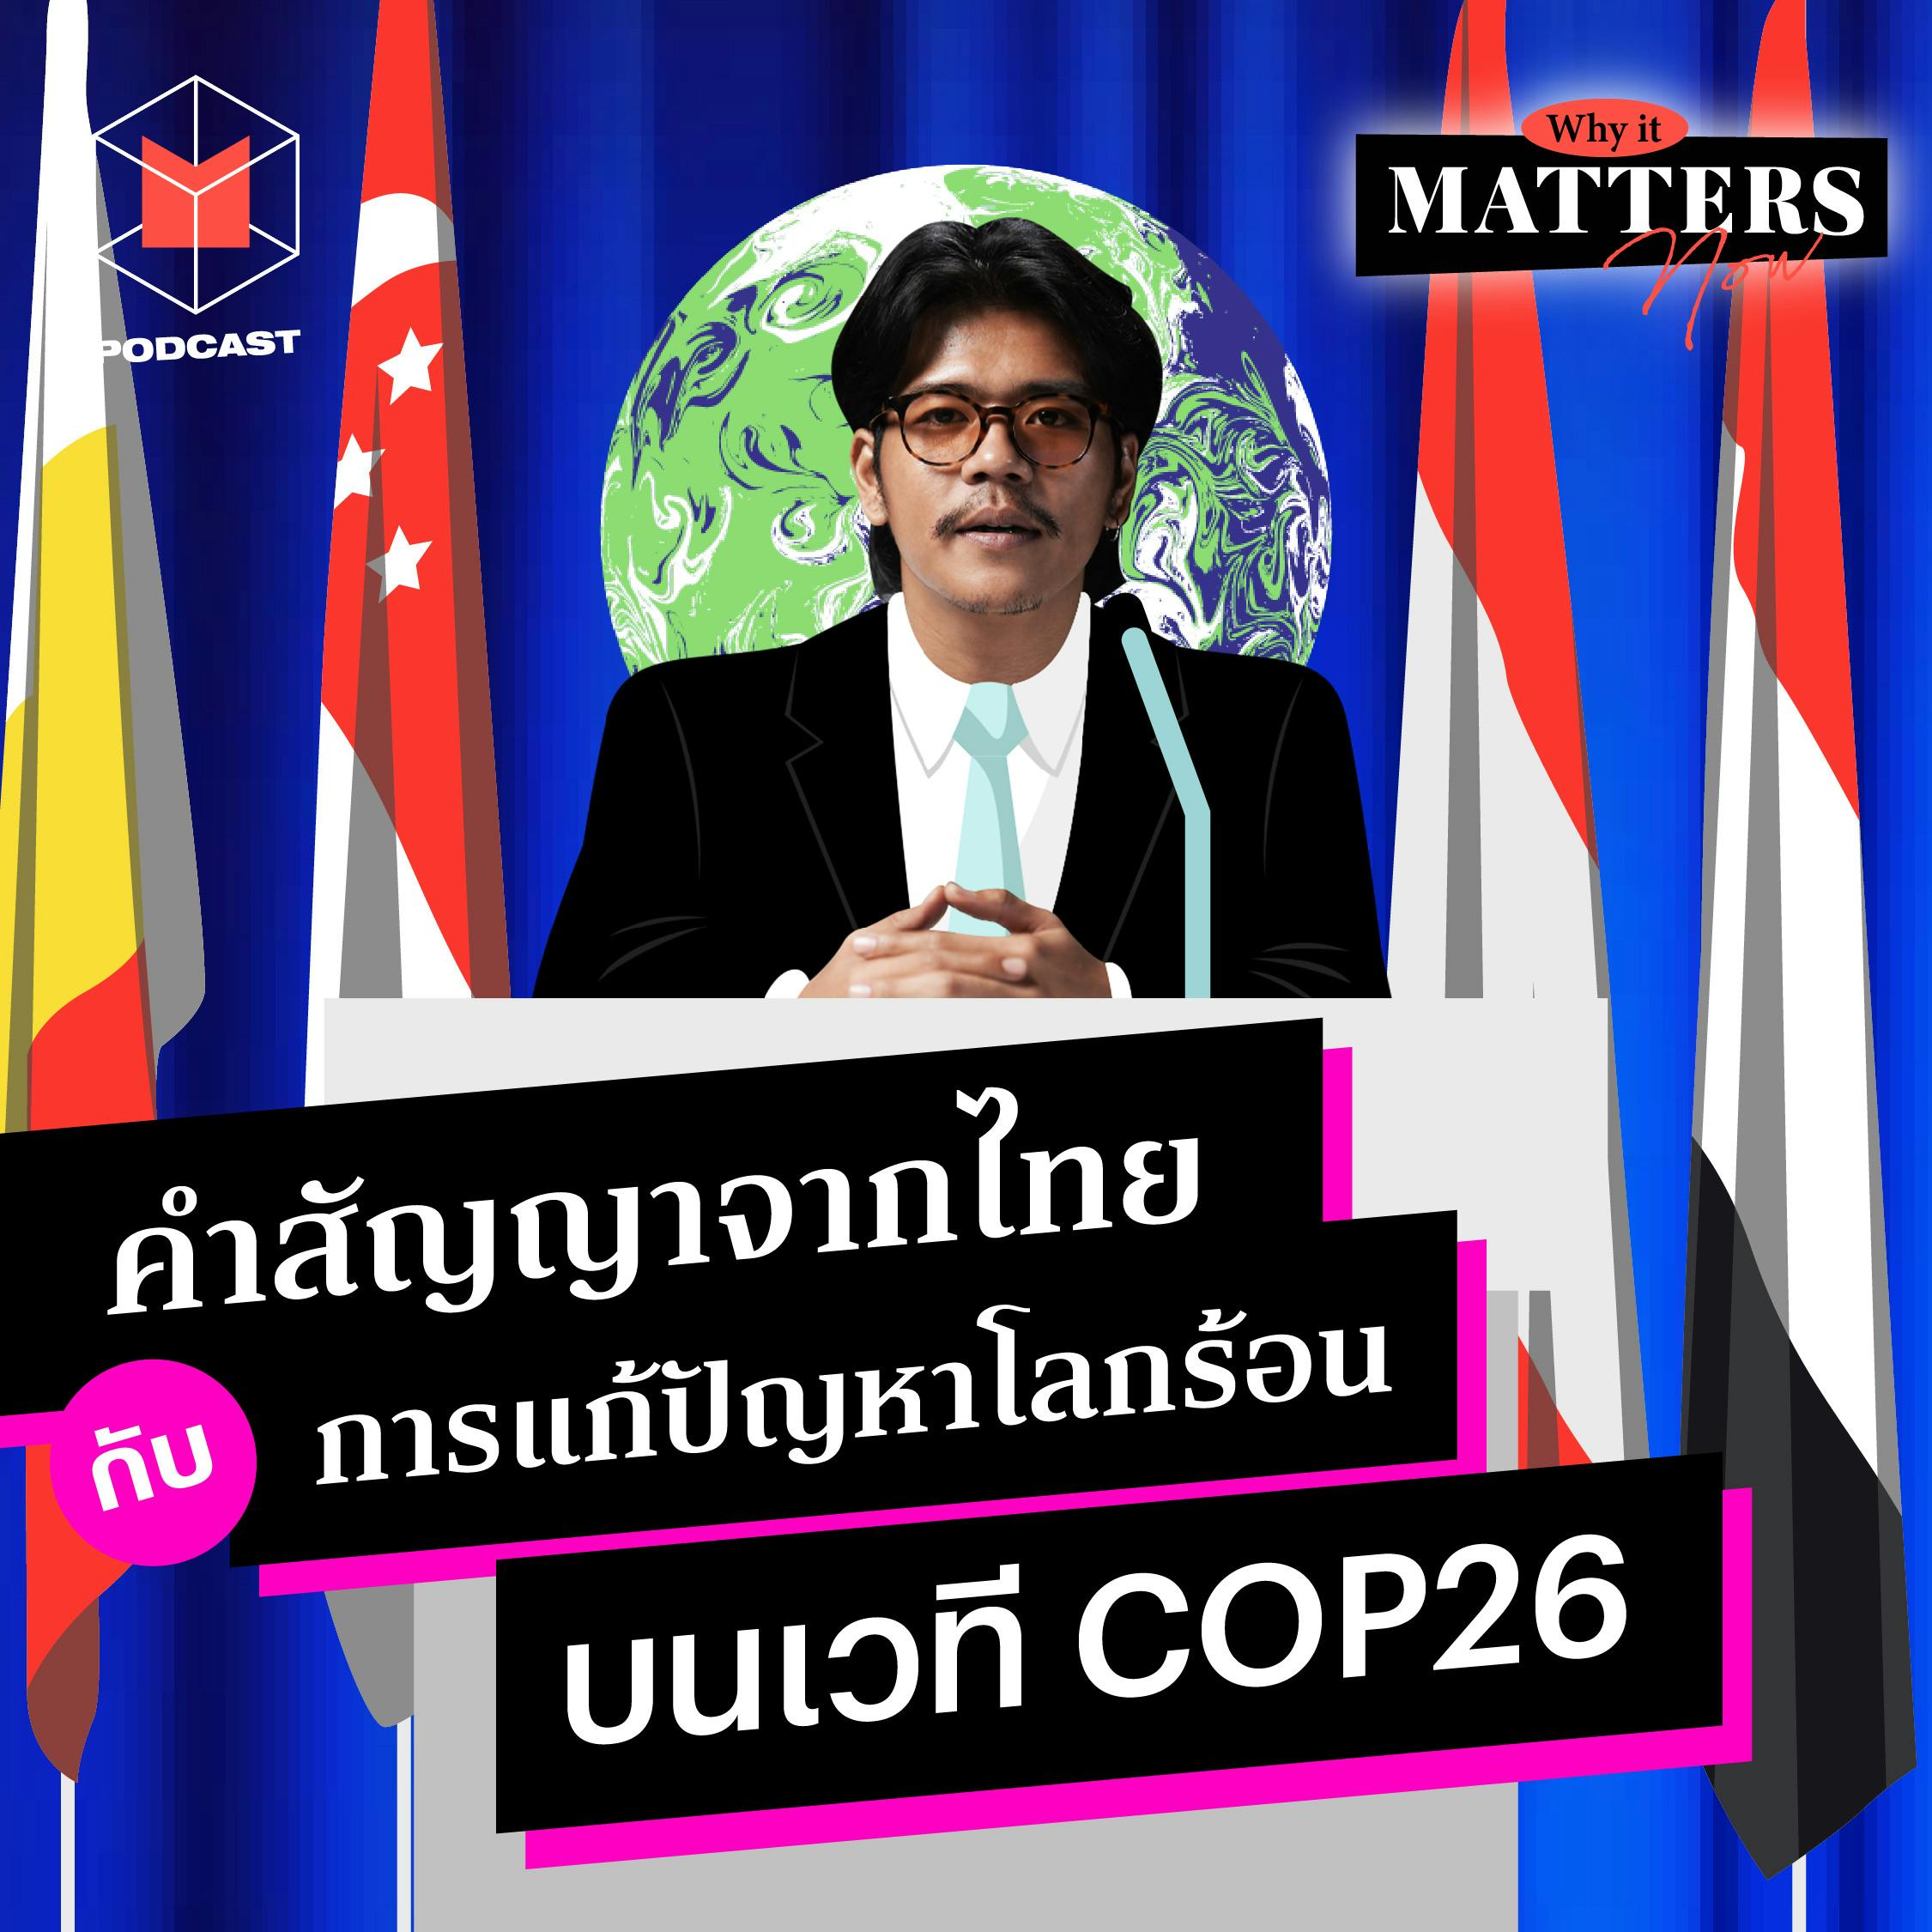 คำสัญญาจากไทยกับการแก้ปัญหาโลกร้อน บนเวที COP26  | WIMN 35